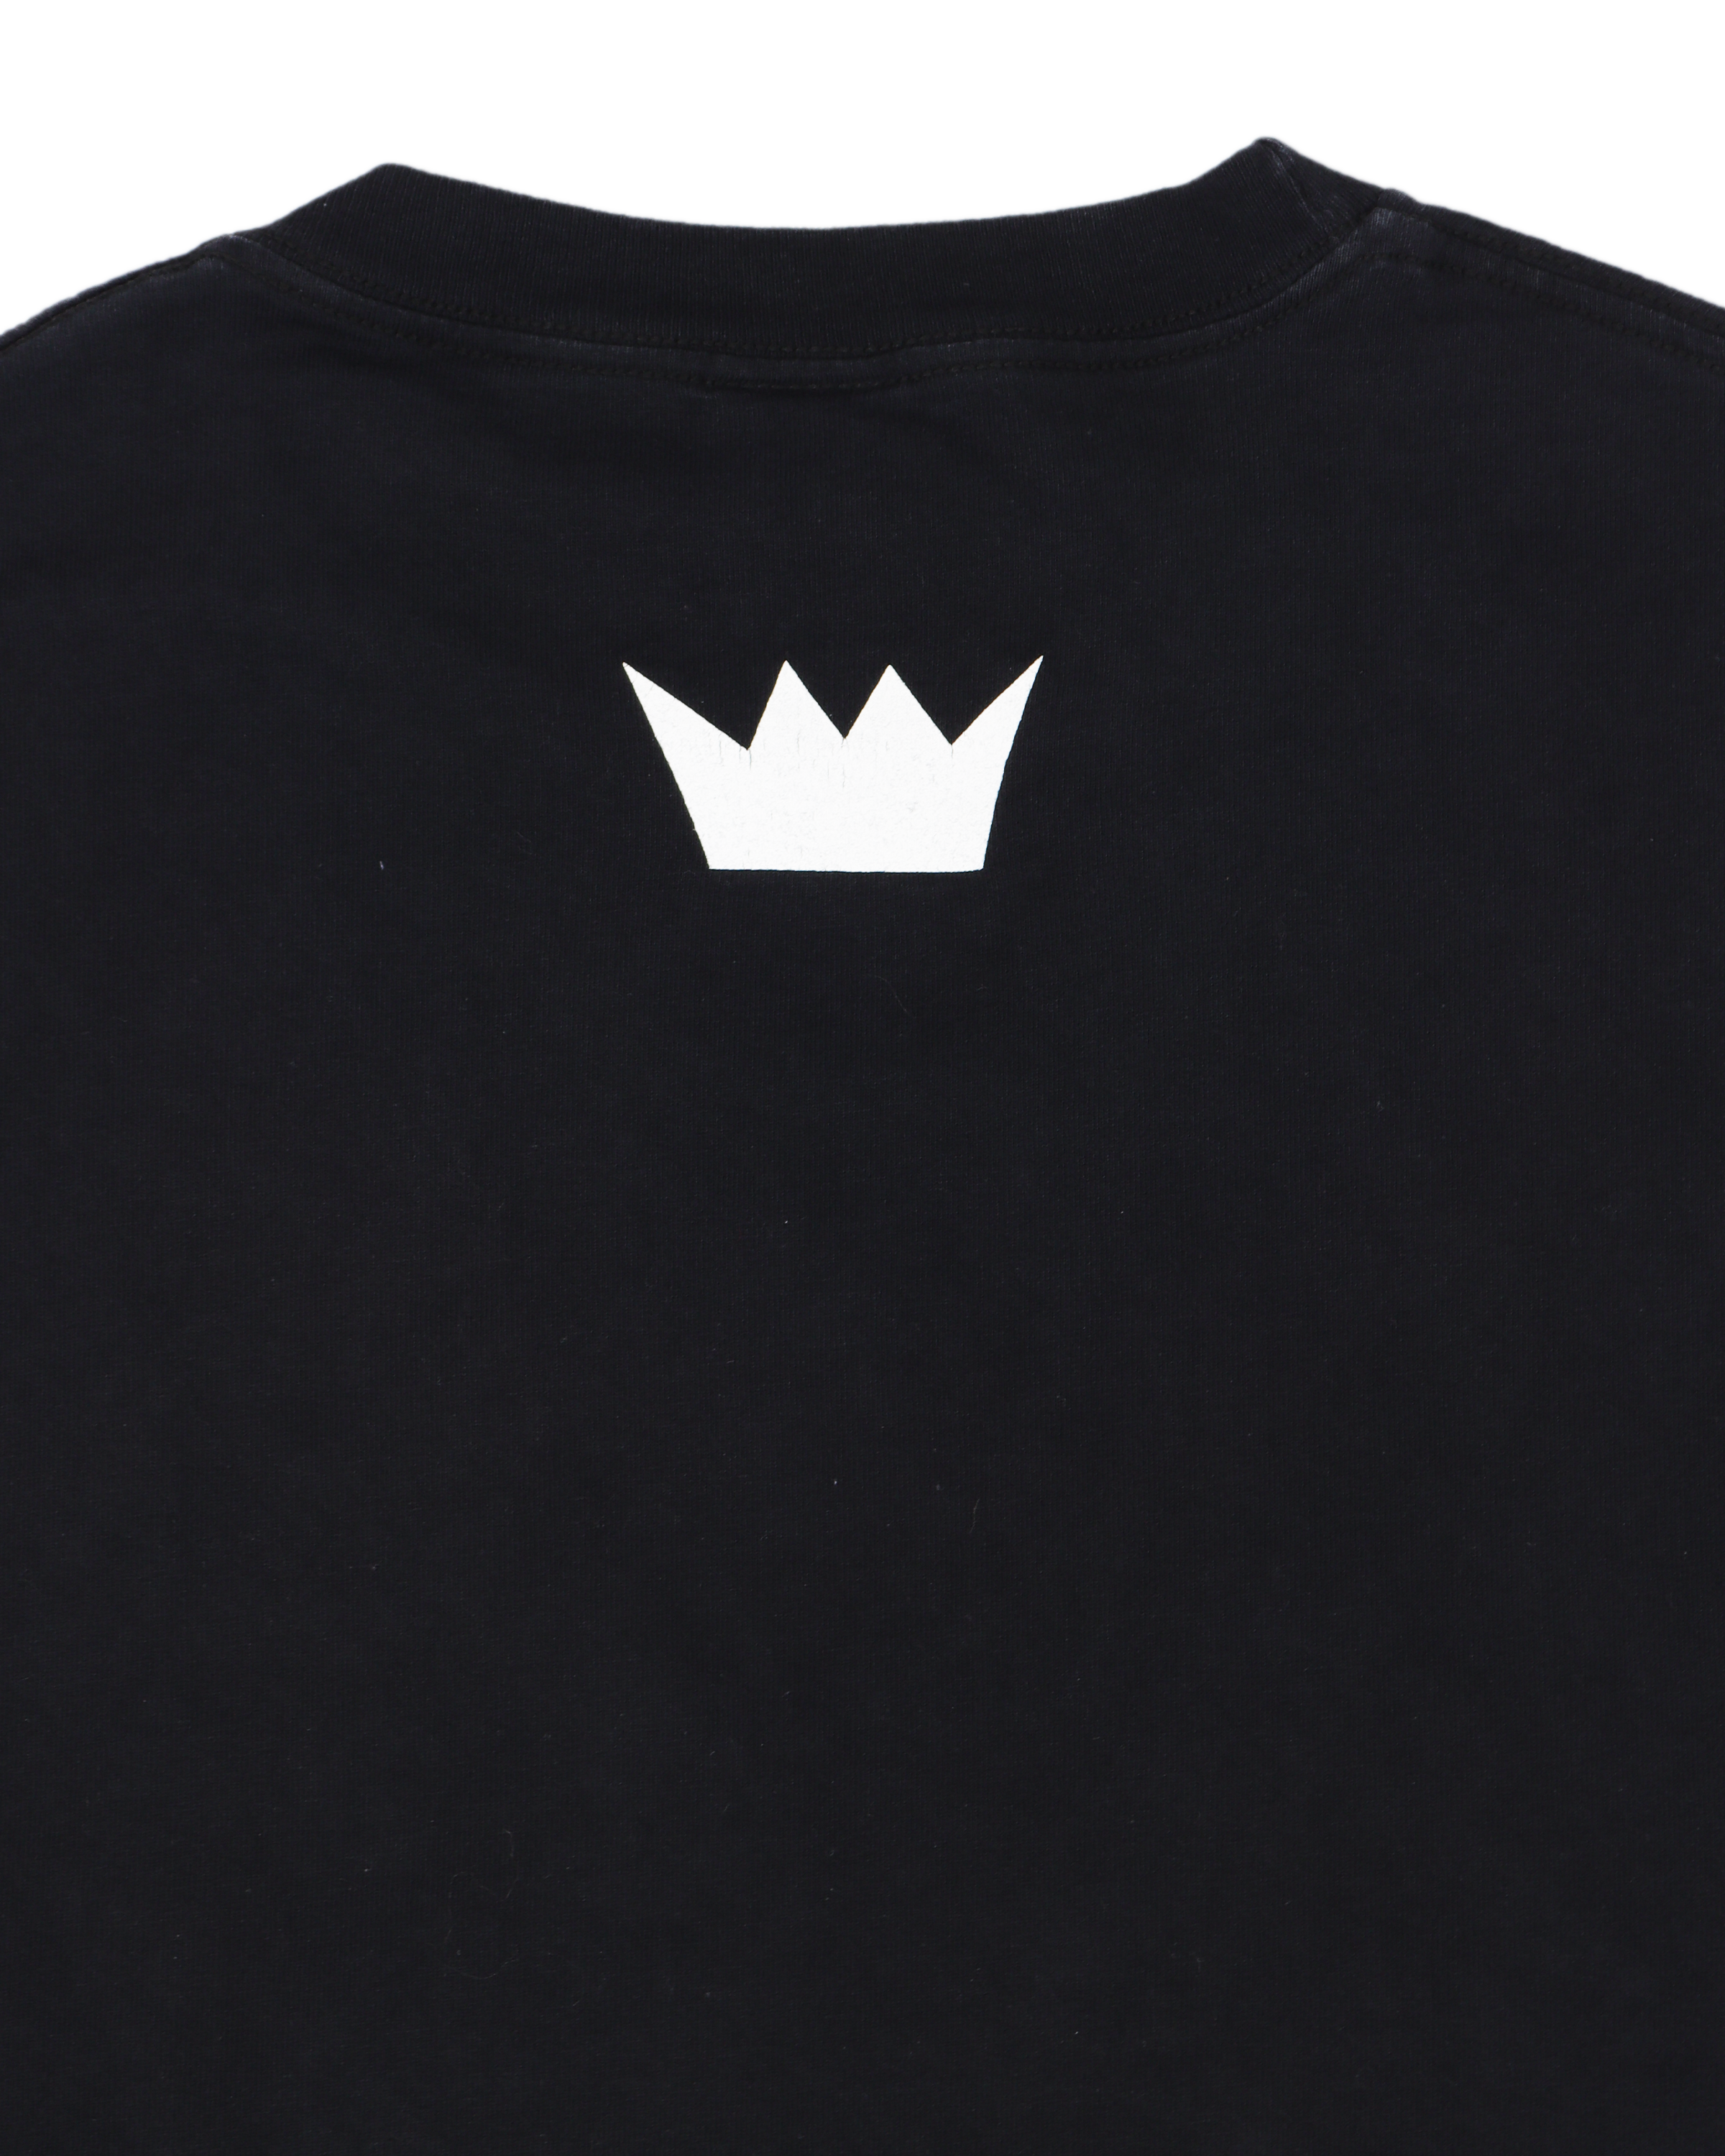 Sade King of Sorrow T-Shirt